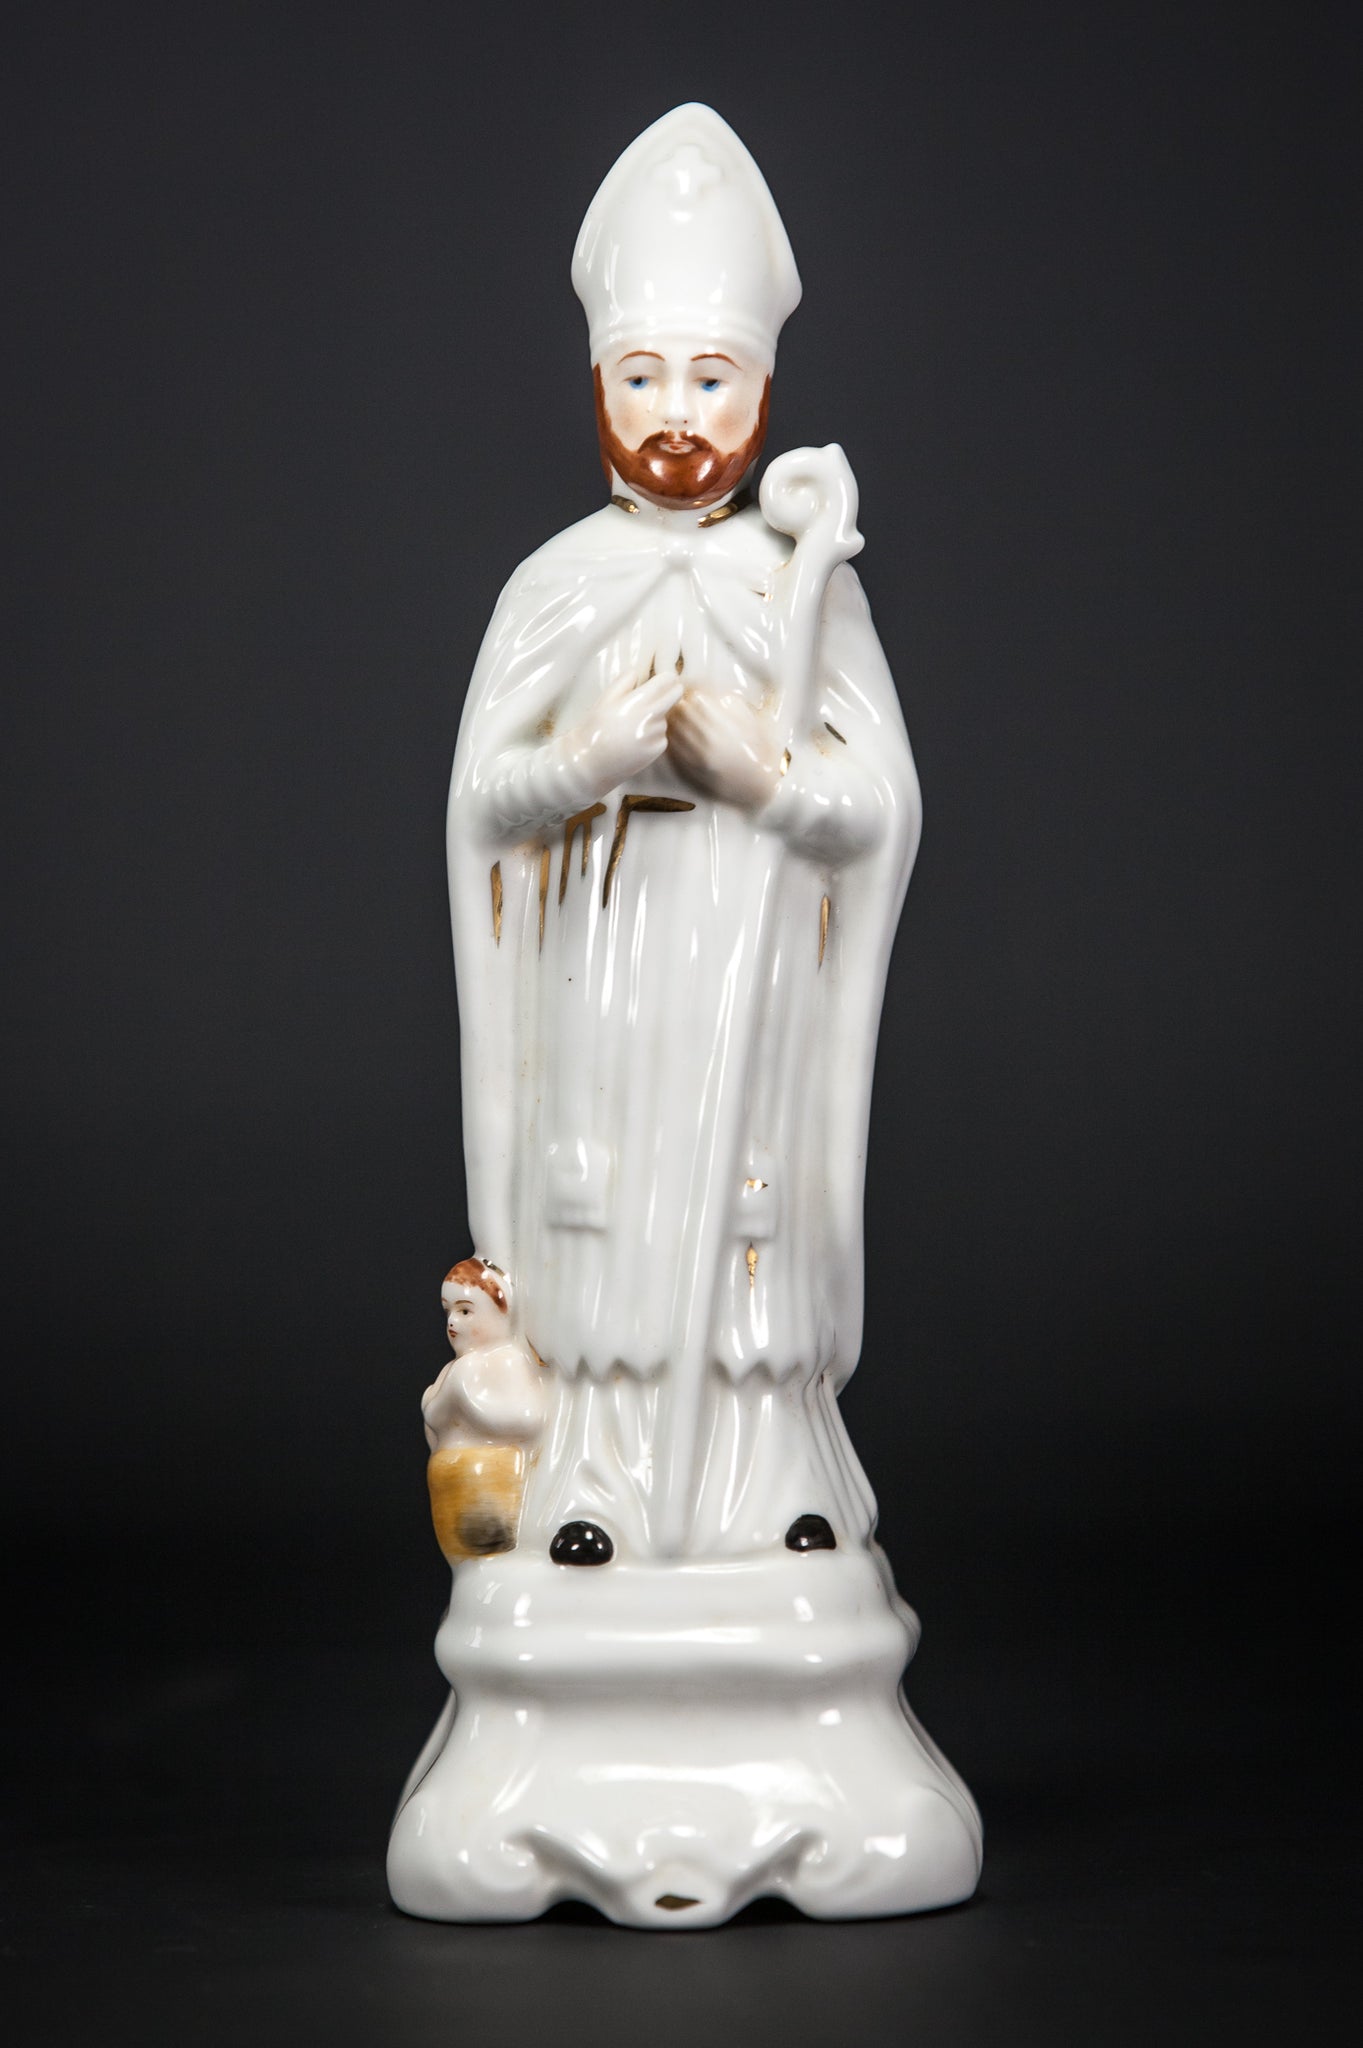 St Nicholas Porcelain Statue 8.3”